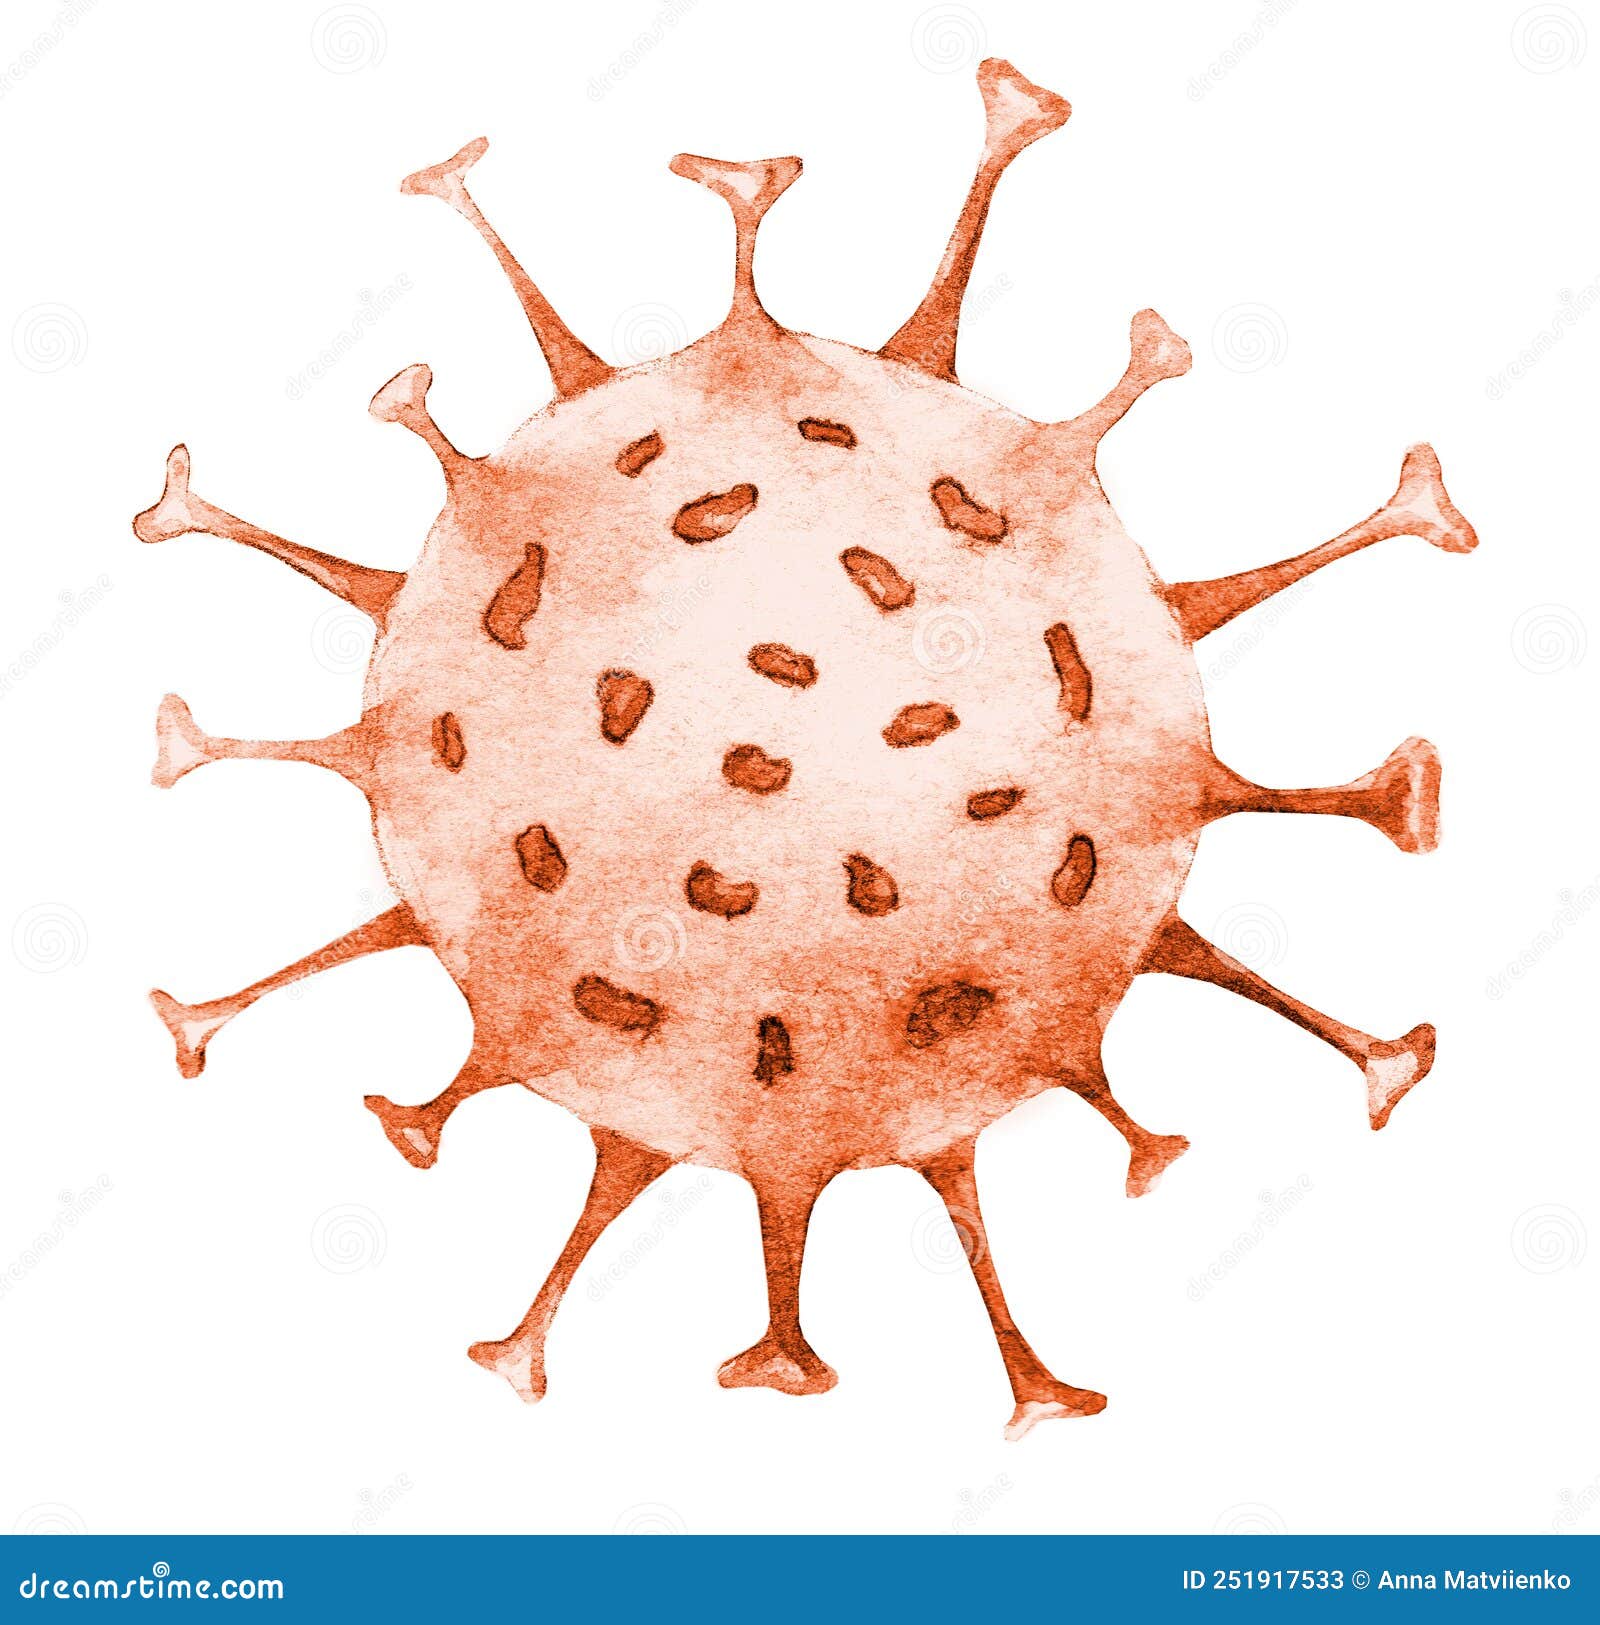 monkeypox virus cell. orthopoxvirus fever stockpile watercolor .